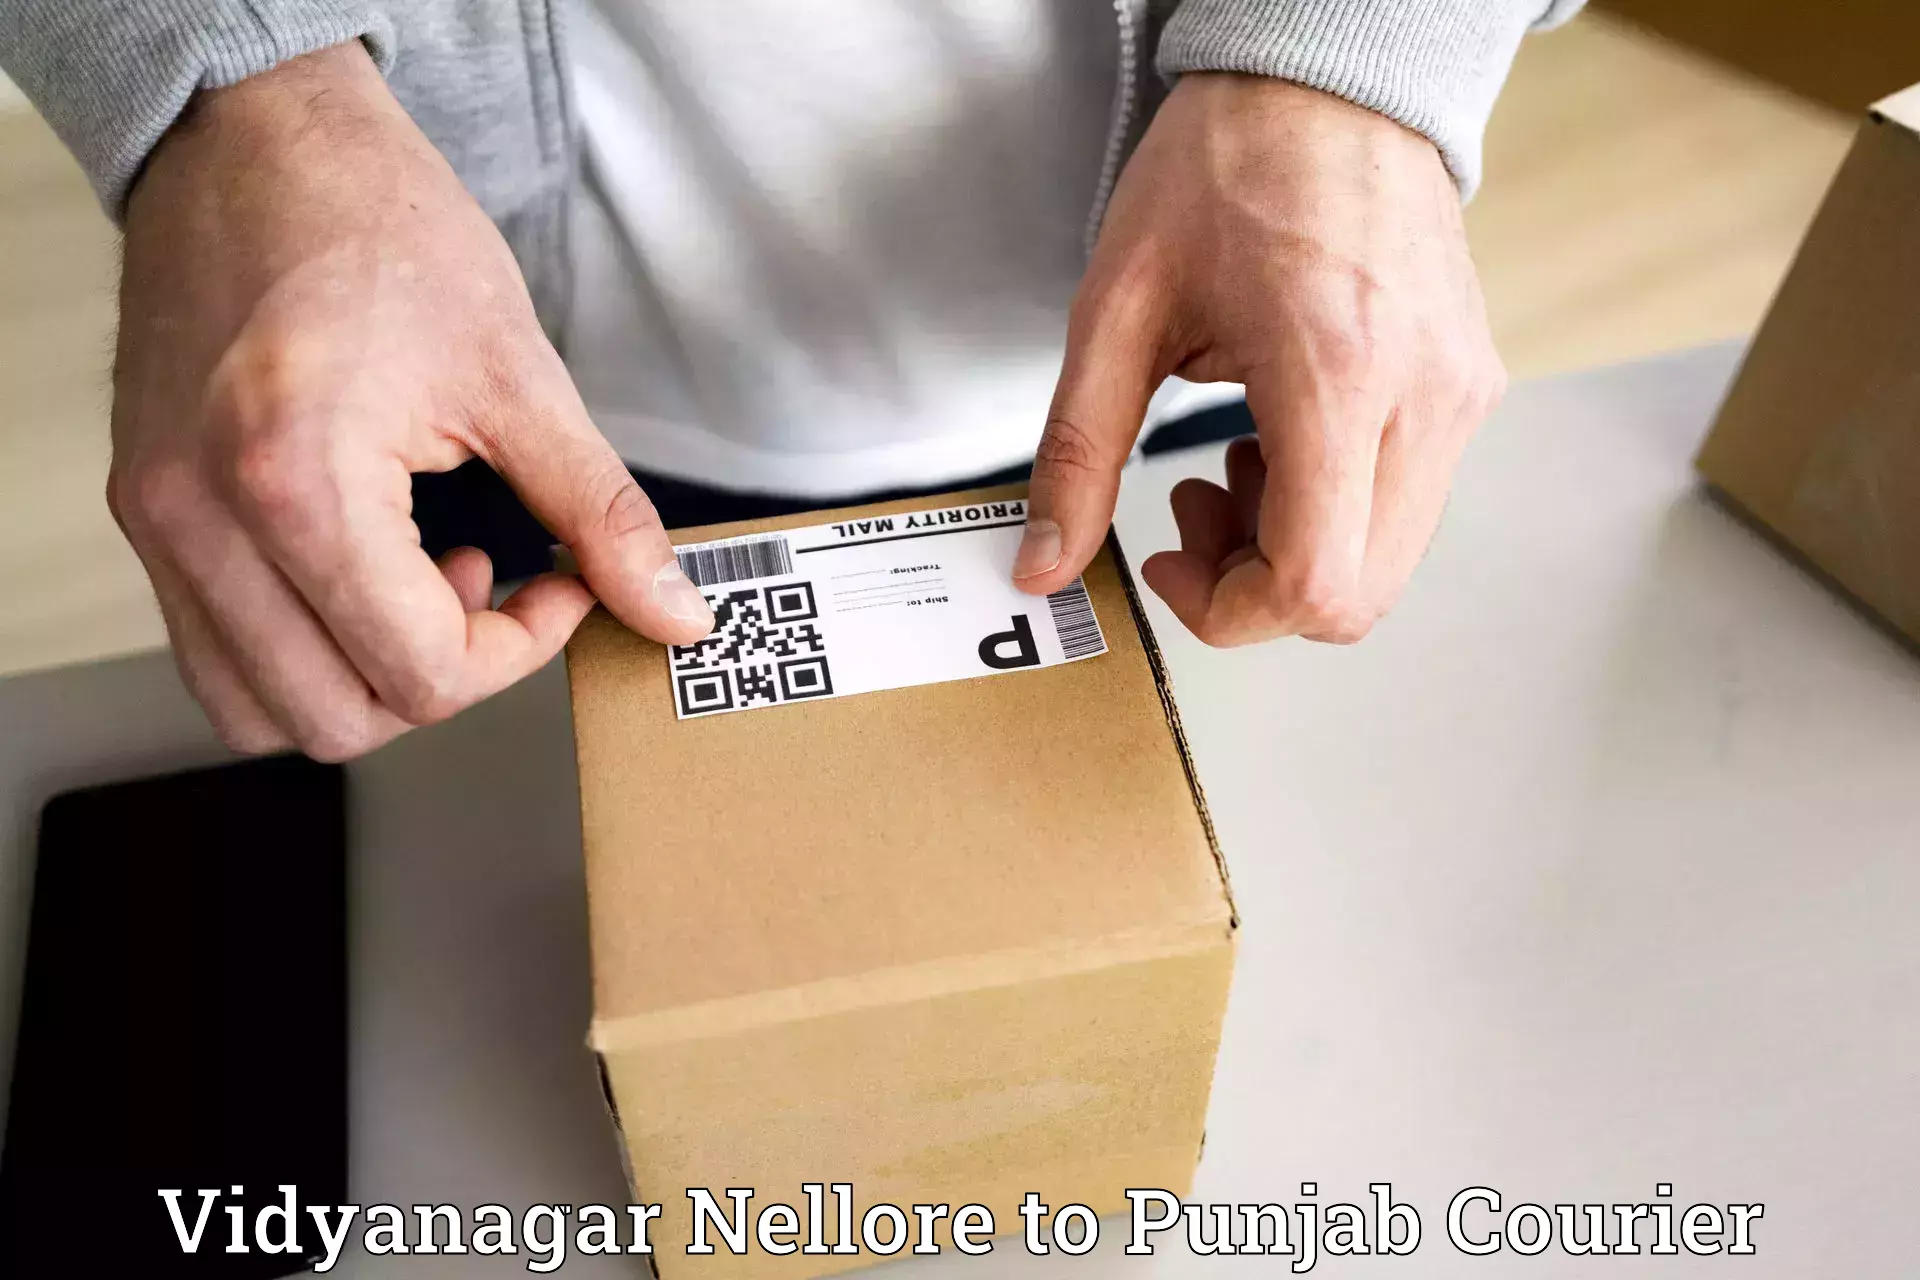 Reliable courier service Vidyanagar Nellore to Fatehgarh Sahib